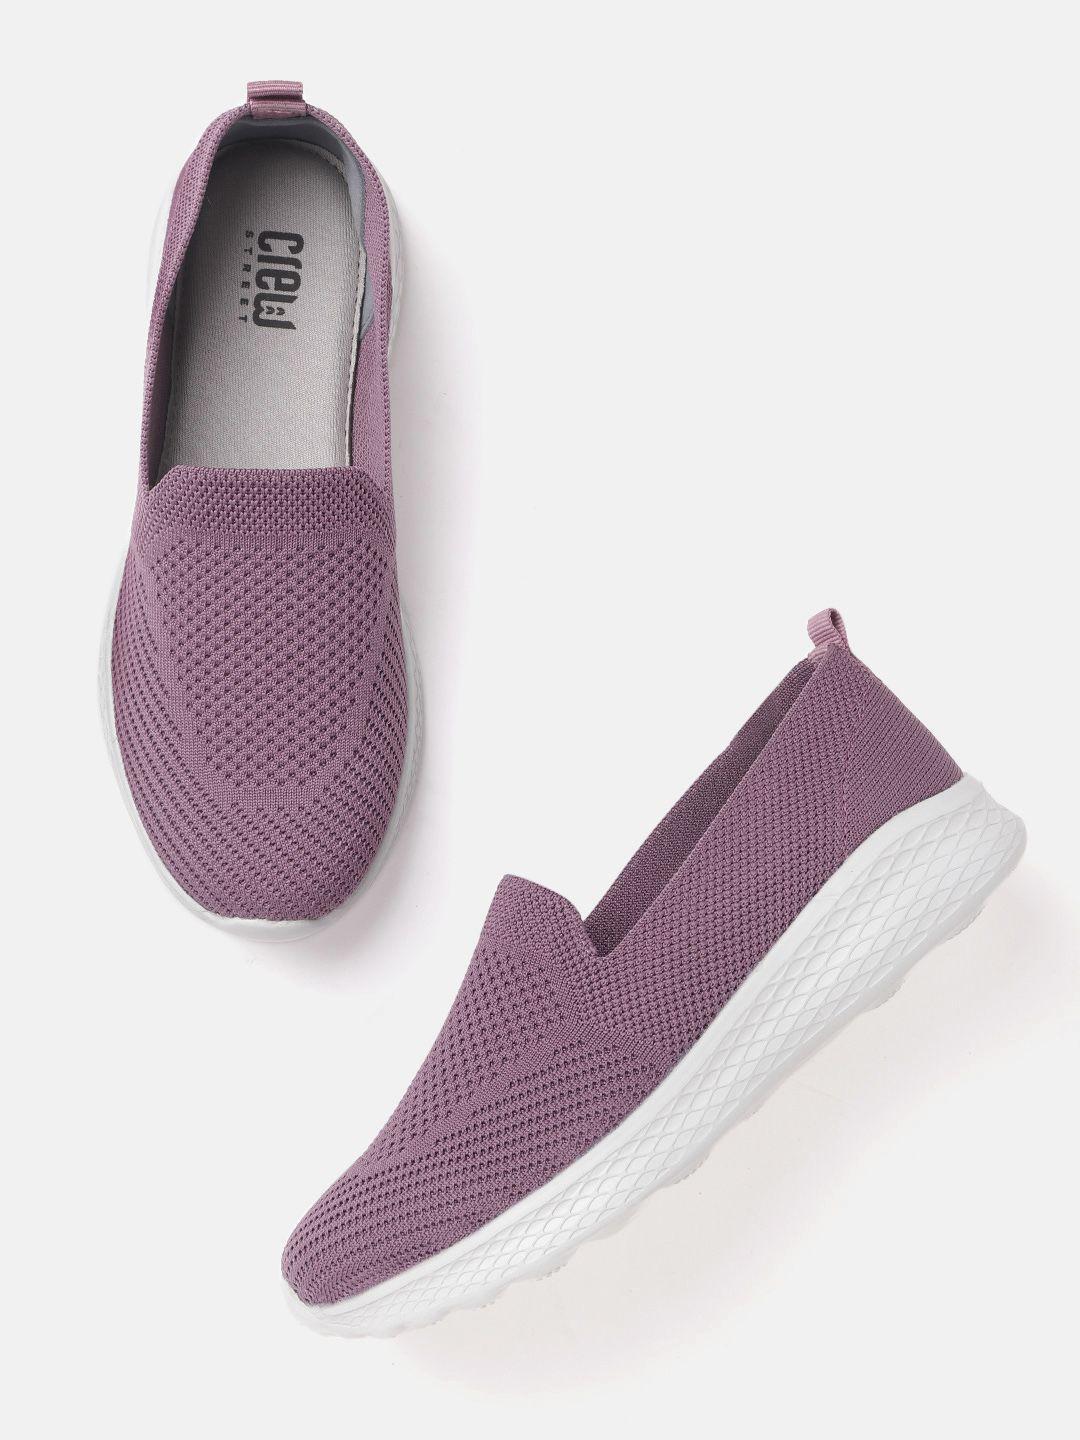 crew street women purple woven design walking shoes